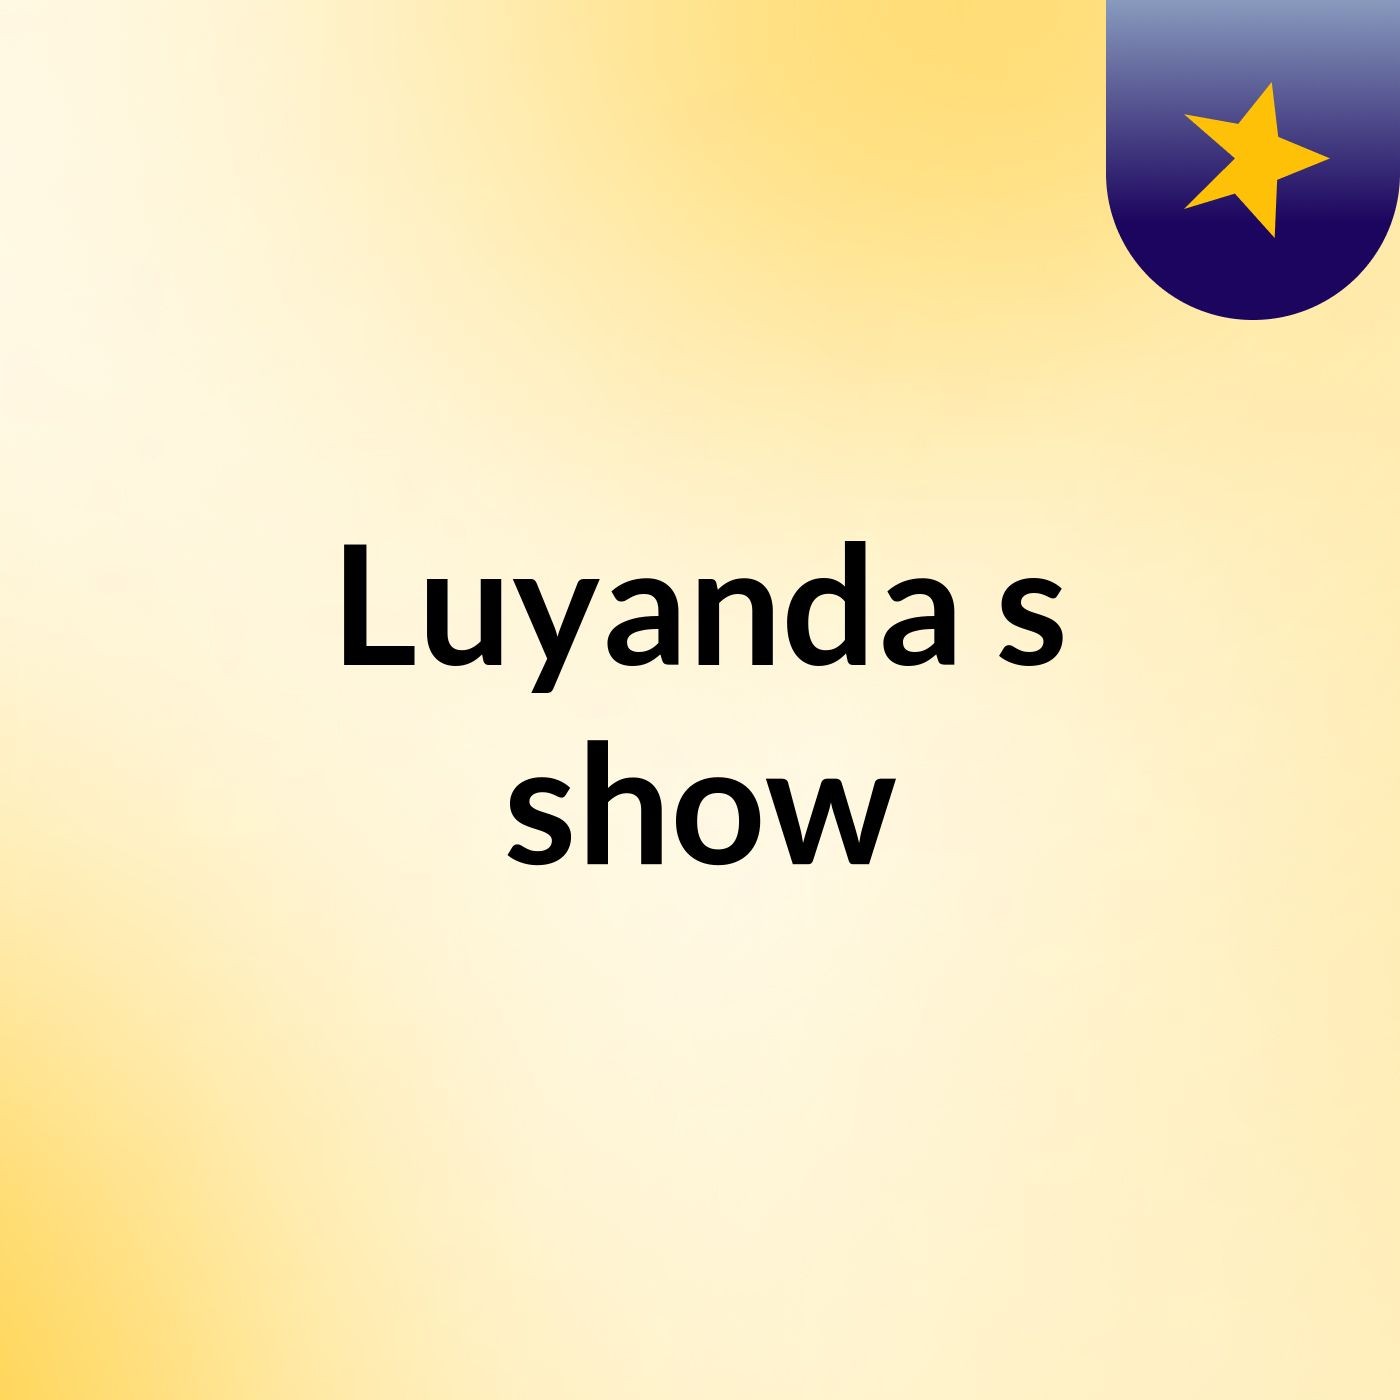 Luyanda's show